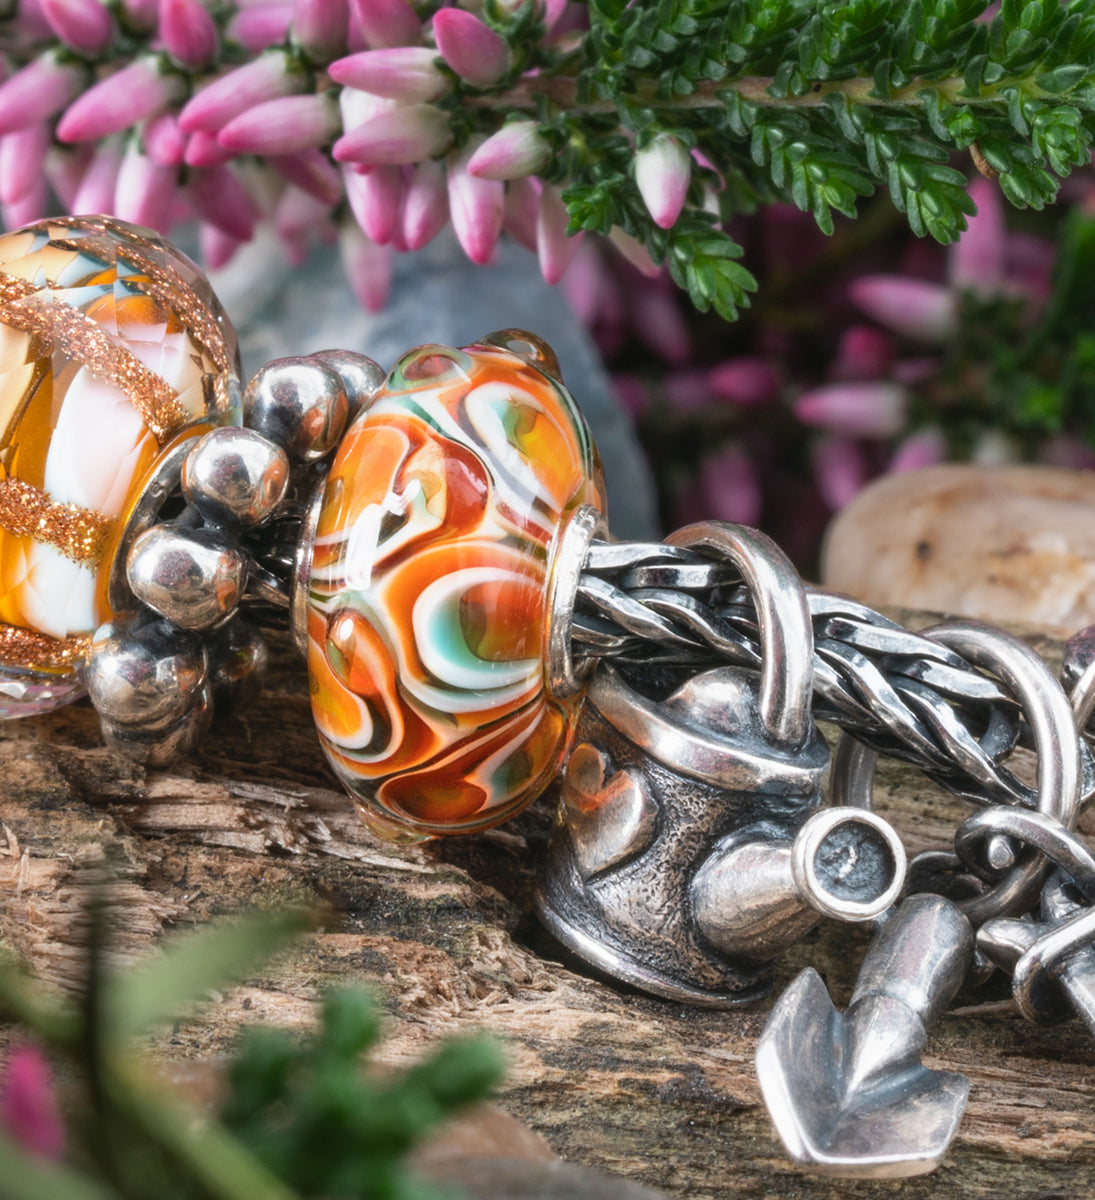 Armband mit Beads der Frühlingskollektion Blühendes Leben, auf einem Baumstamm liegend. Im Hintergrund Blumen